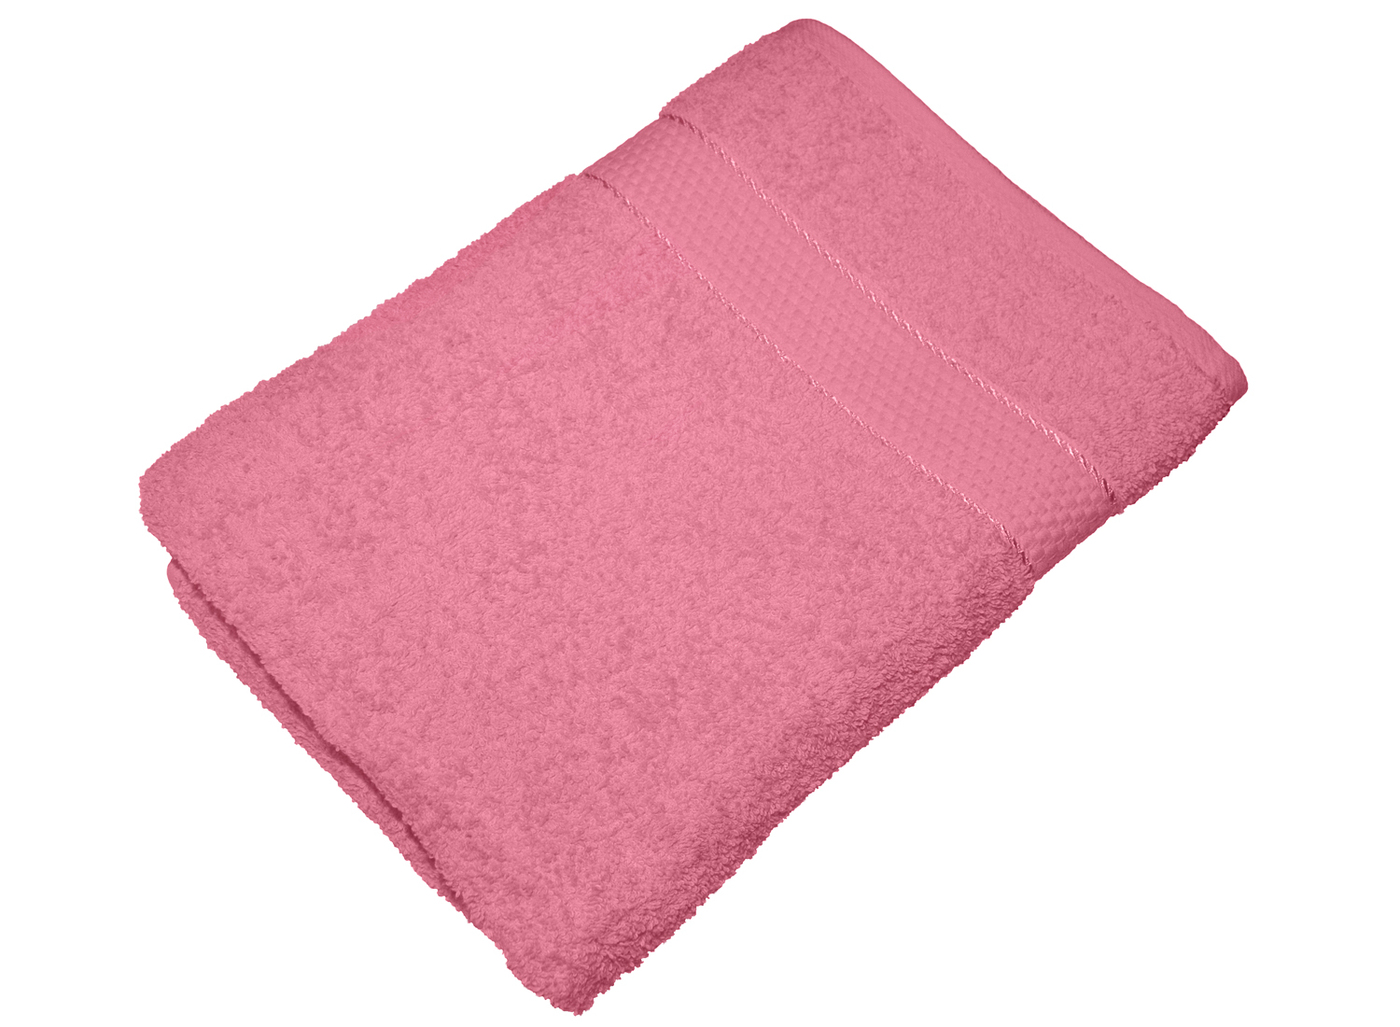 Купить полотенце 70 140. Полотенце банное Aisha. Aisha Home Textile полотенце. Полотенце банное 70х140 махровое. Полотенце 70х140см ФИОНЭ, розовый,.